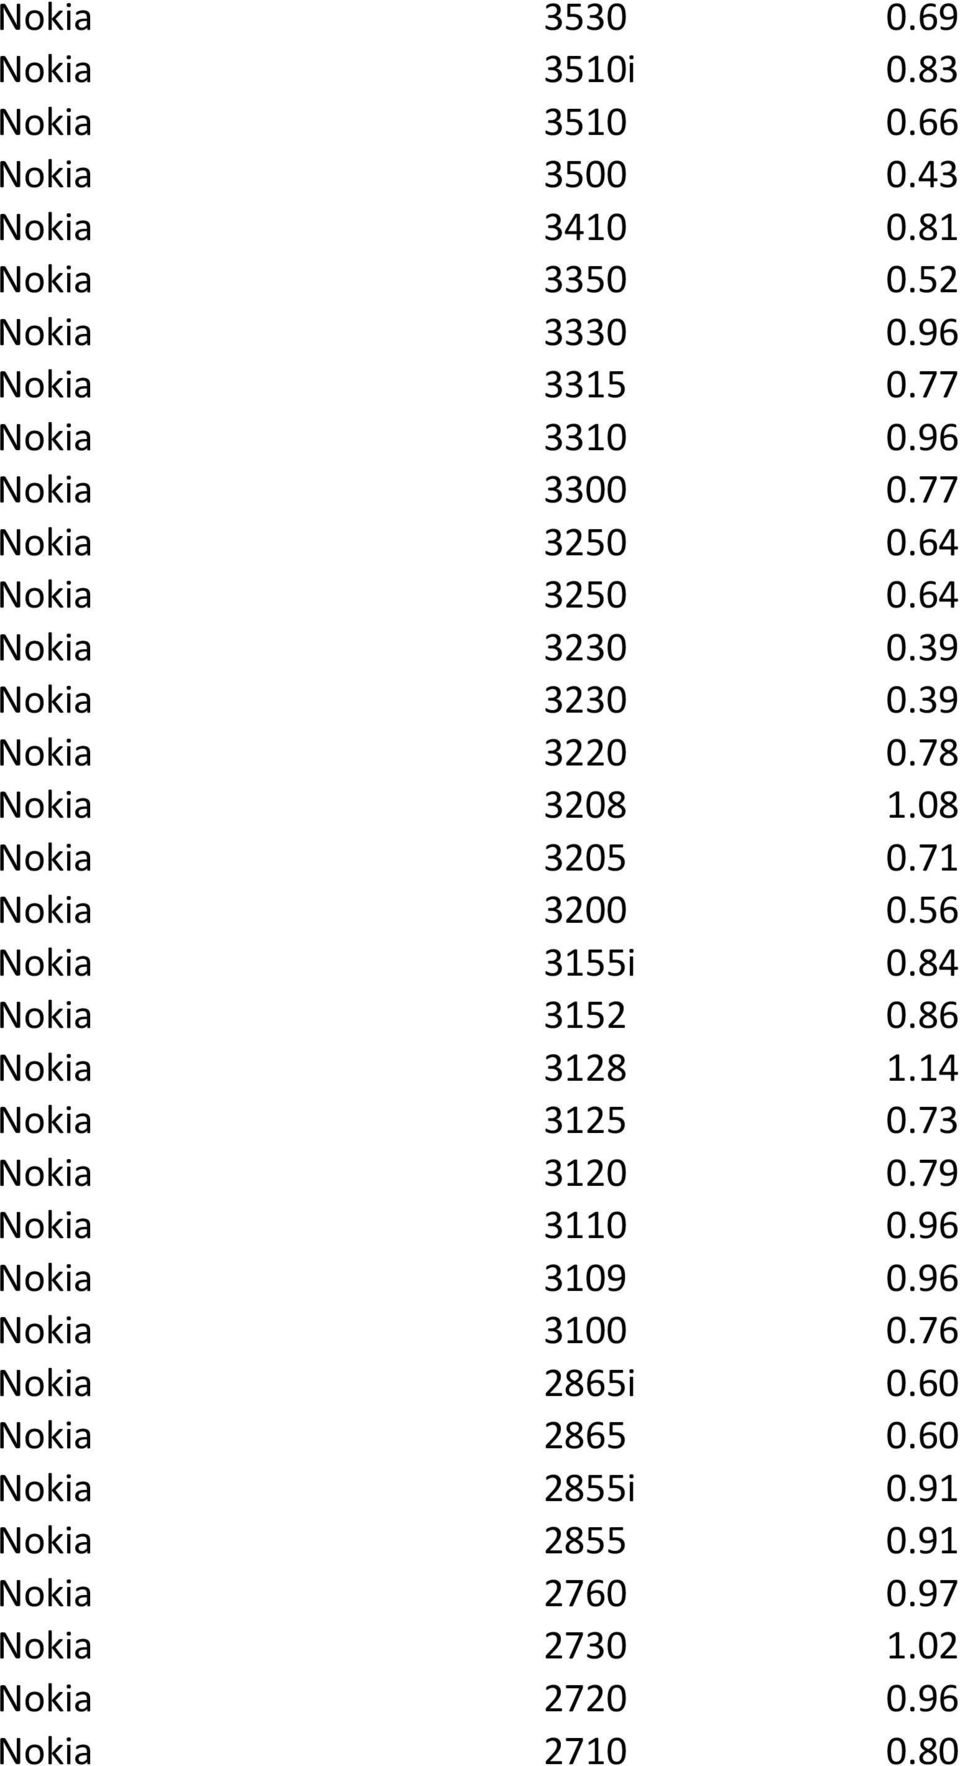 08 Nokia 3205 0.71 Nokia 3200 0.56 Nokia 3155i 0.84 Nokia 3152 0.86 Nokia 3128 1.14 Nokia 3125 0.73 Nokia 3120 0.79 Nokia 3110 0.